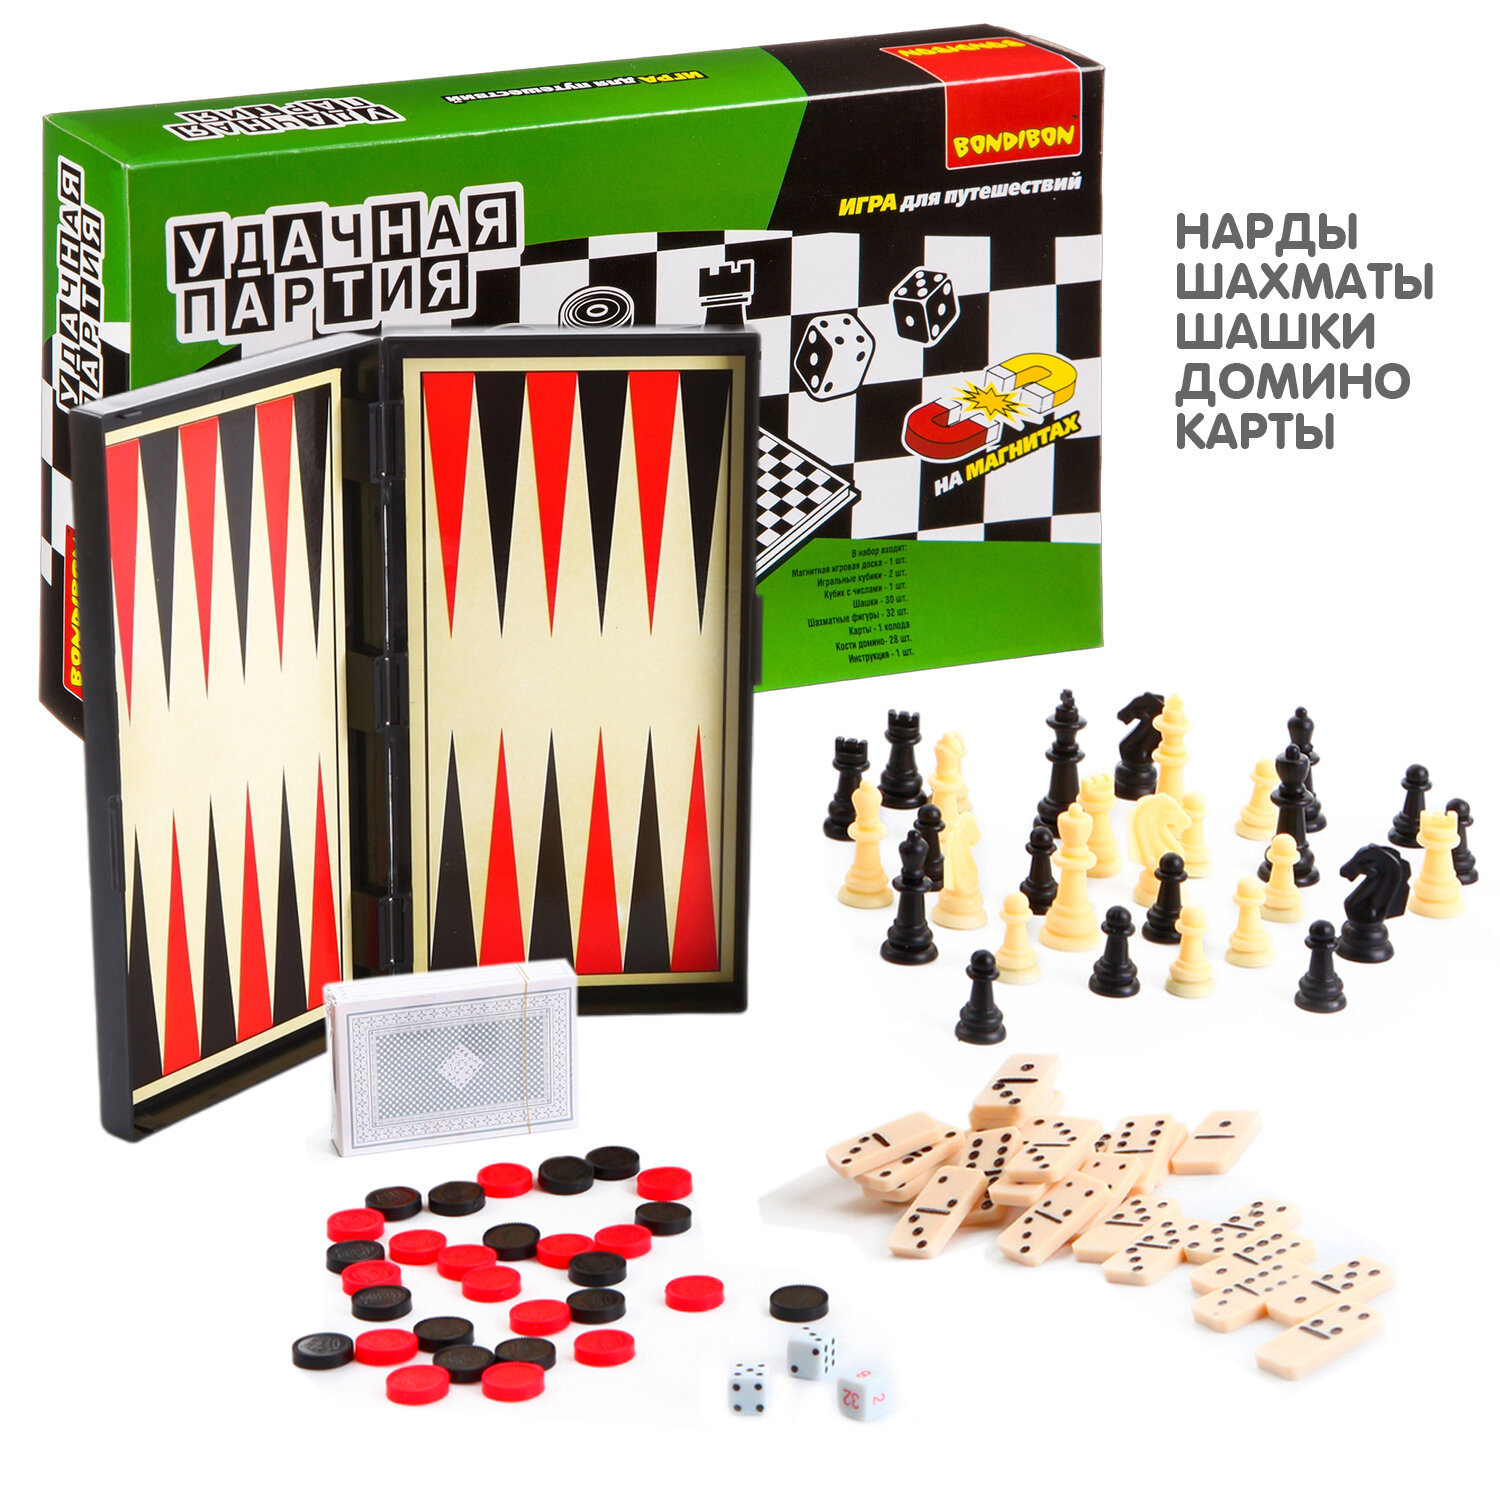 Набор настольных игр Bondibon "Удачная партия", 5в1: нарды, шашки, шахматы, карты, домино